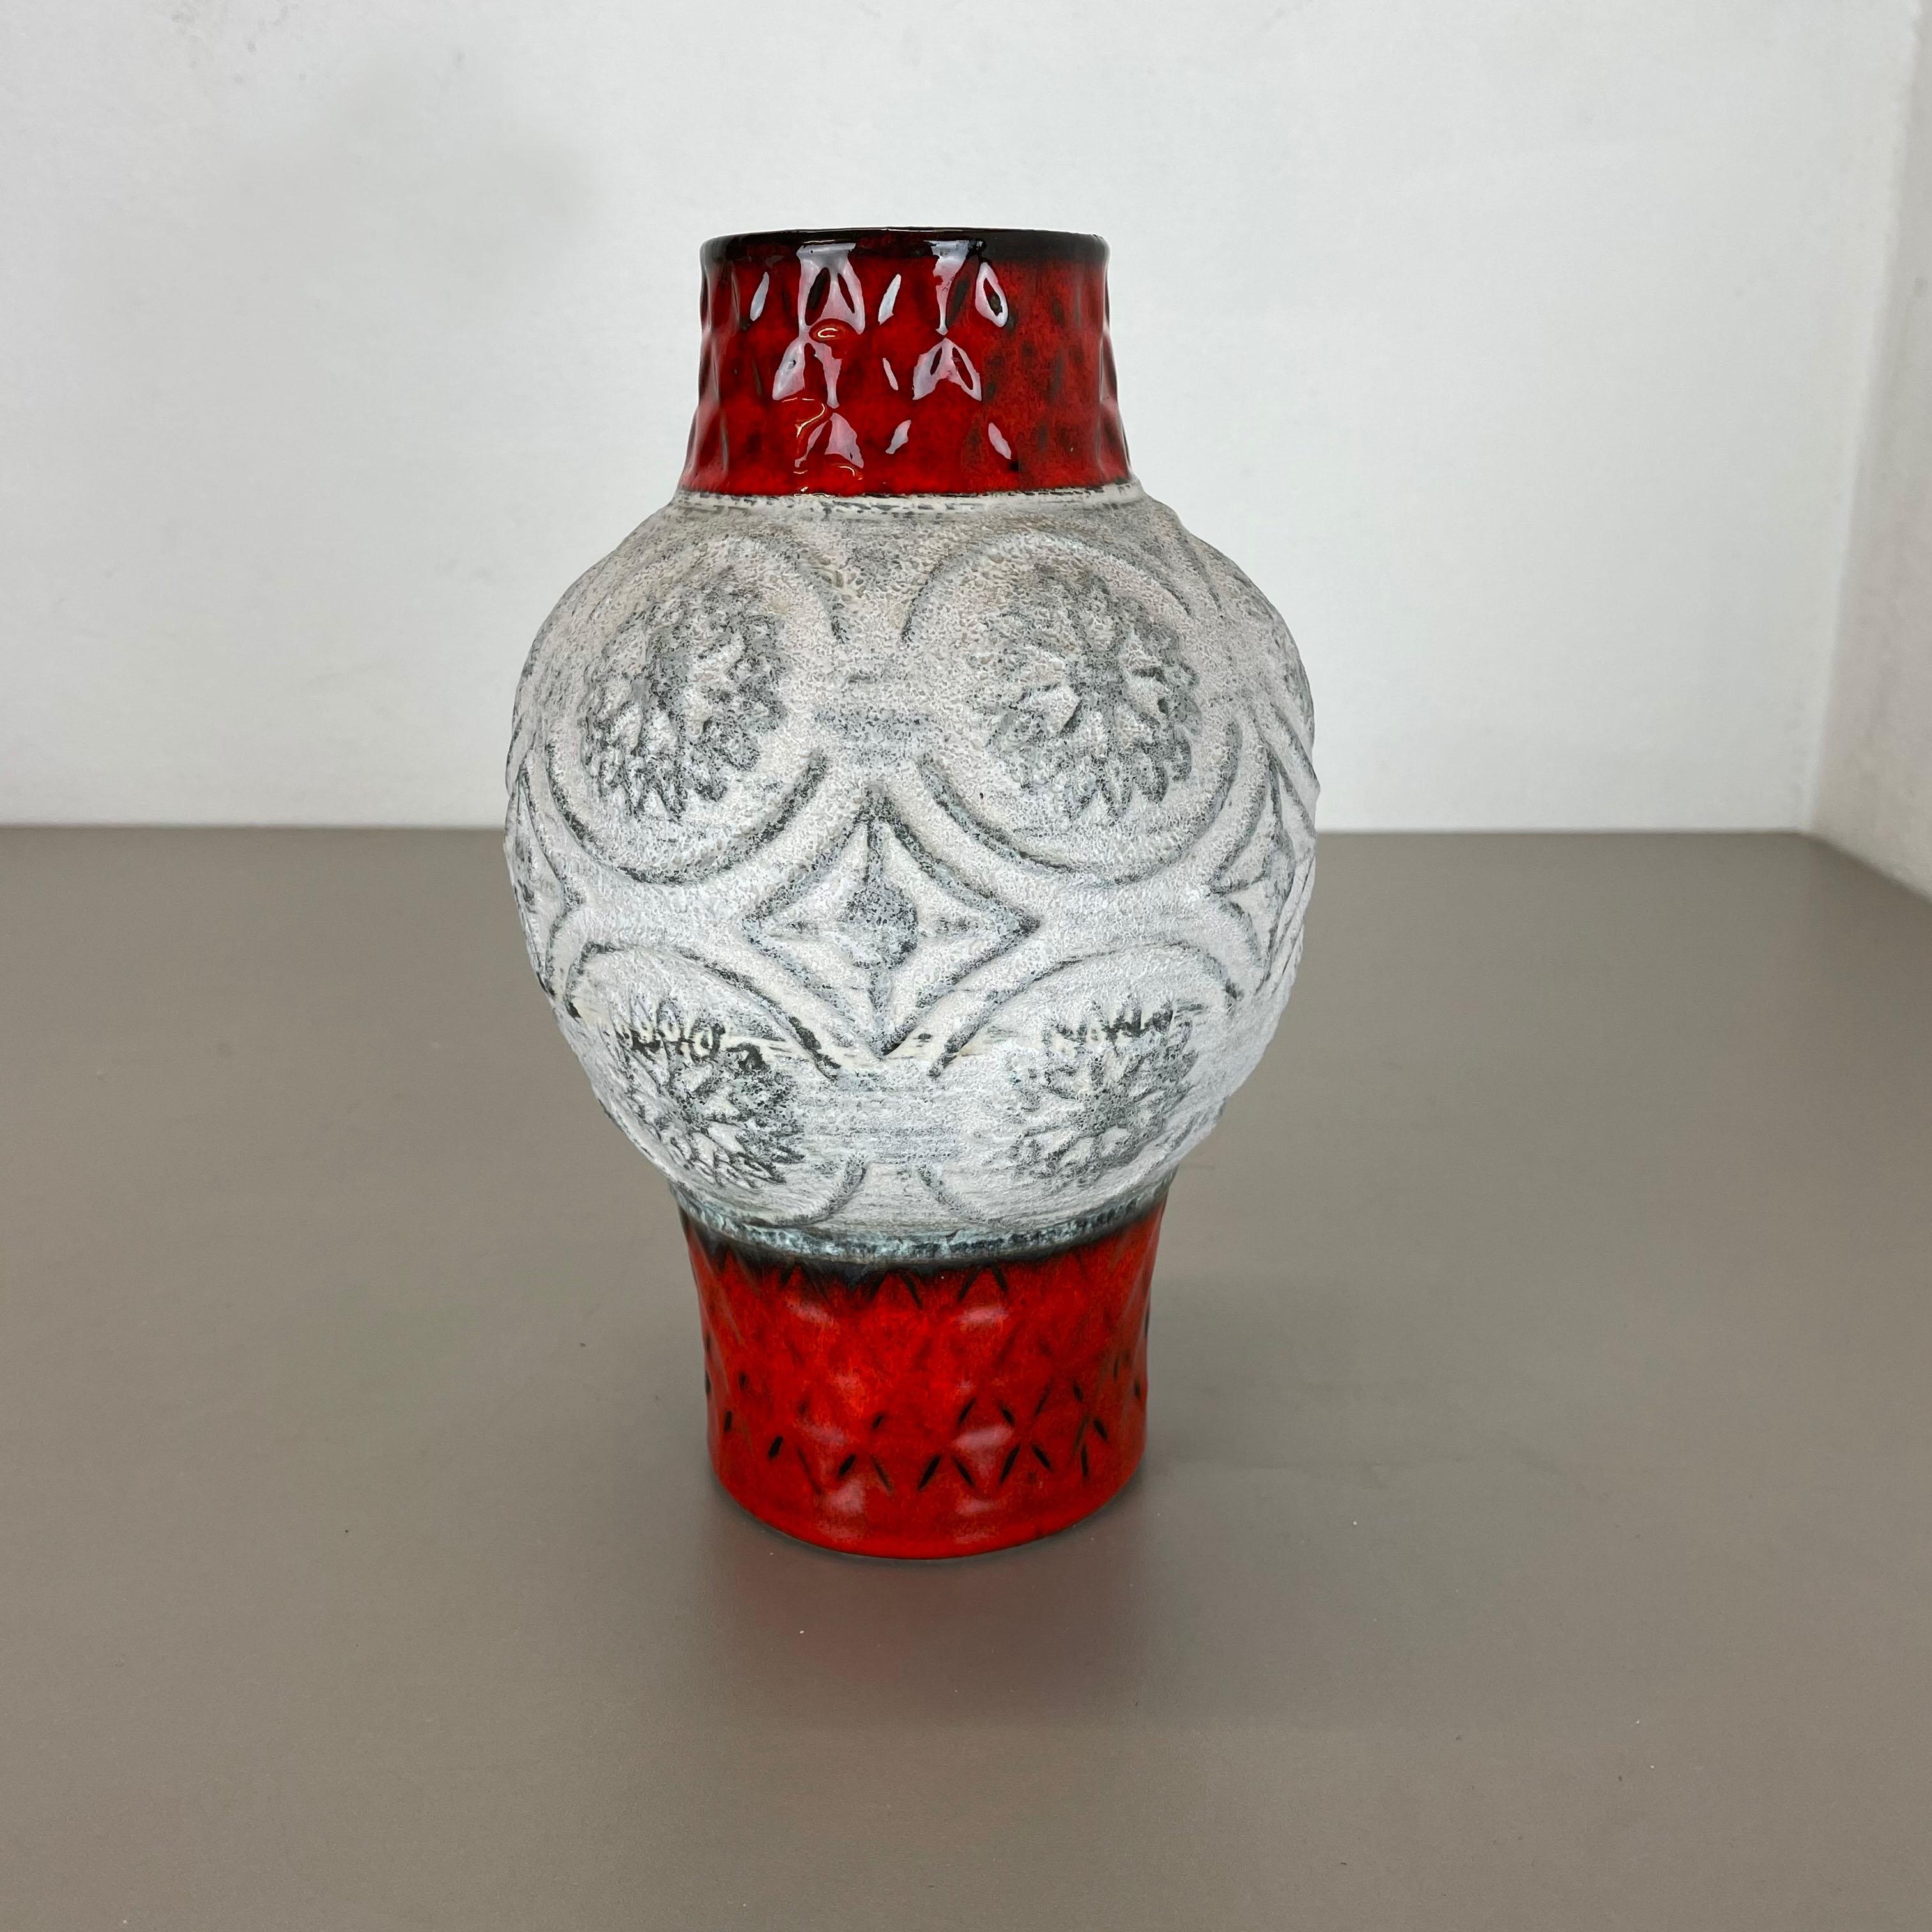 Artikel:

Vase aus Keramik


Produzent:

BAY Ceramic, Deutschland



Jahrzehnt:

1970s



Beschreibung:

Original Vintage Keramikvase aus den 1970er Jahren, hergestellt in Deutschland. Hochwertige deutsche Produktion mit schöner